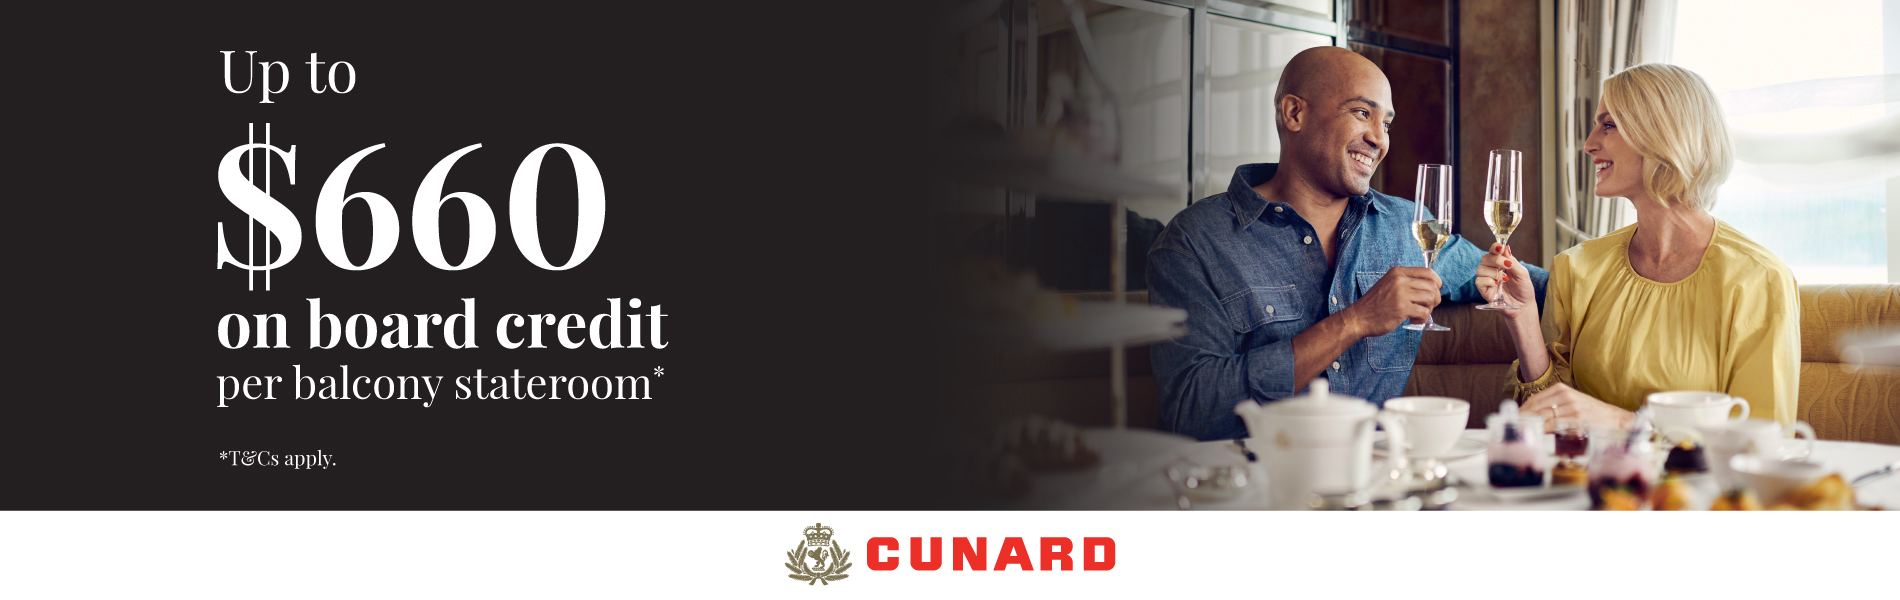 Cunard Cruises Campaign